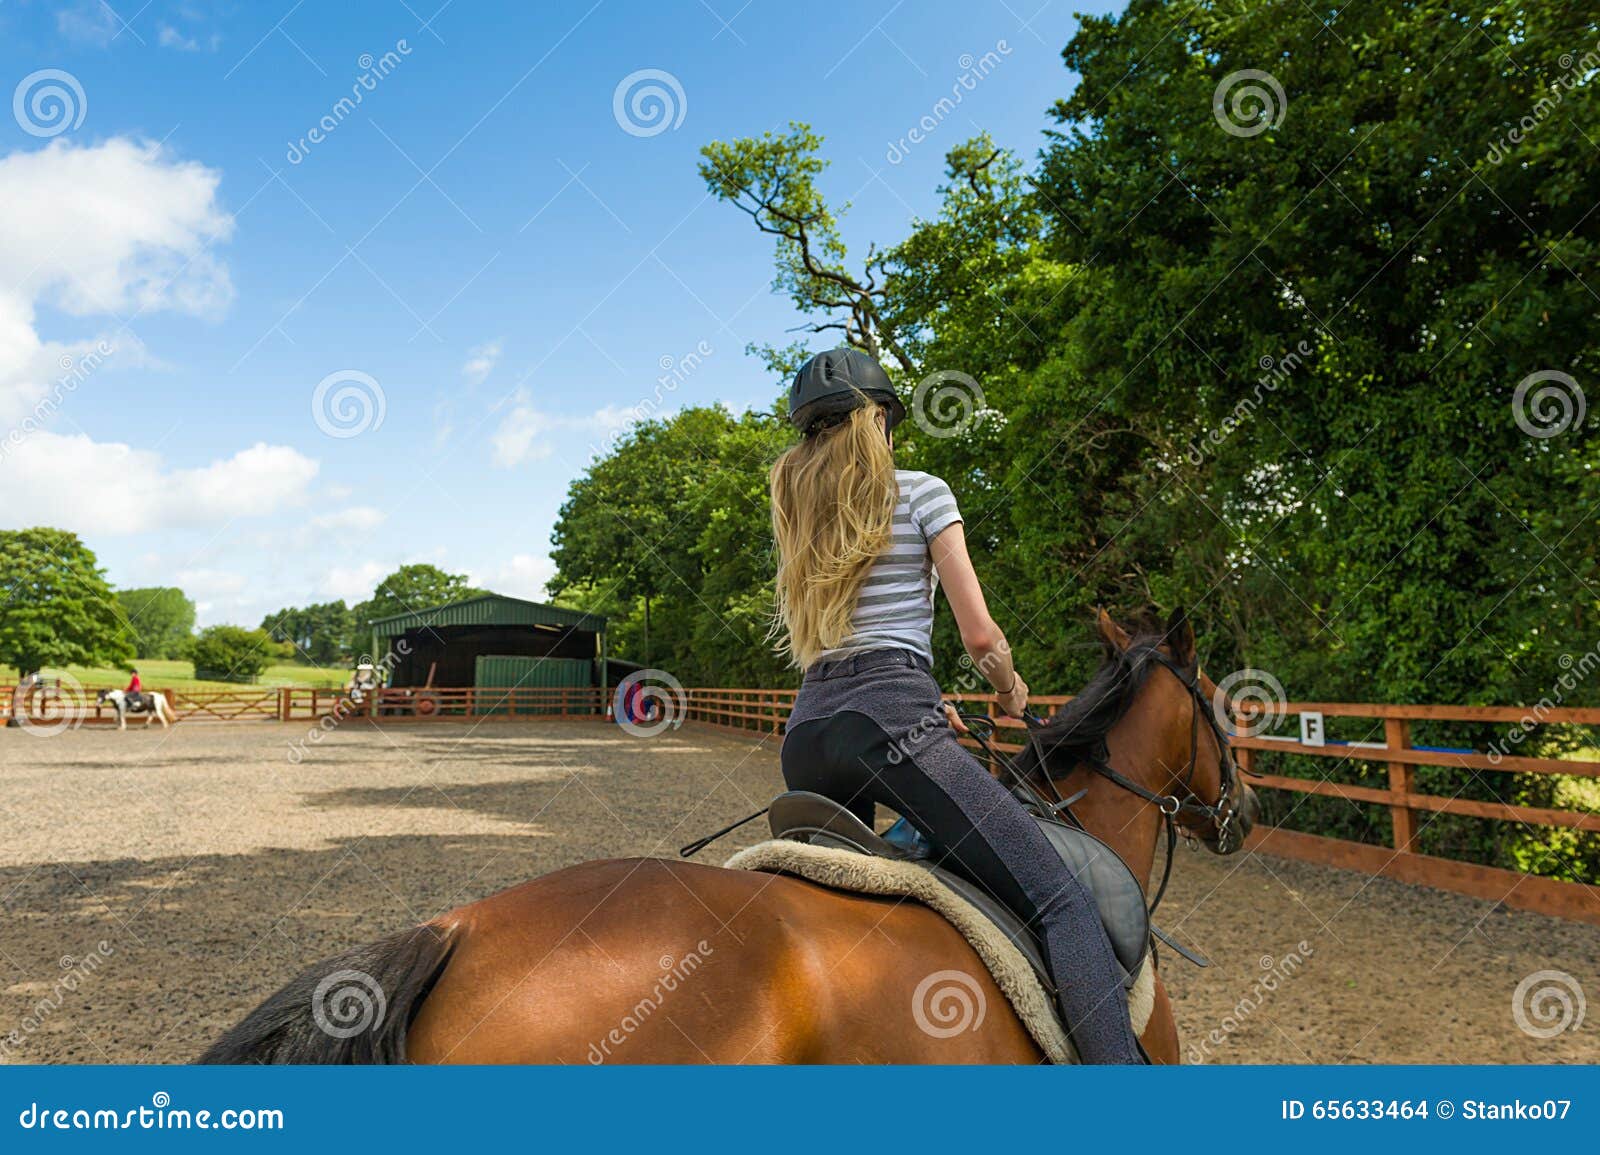 horse riding at paddock